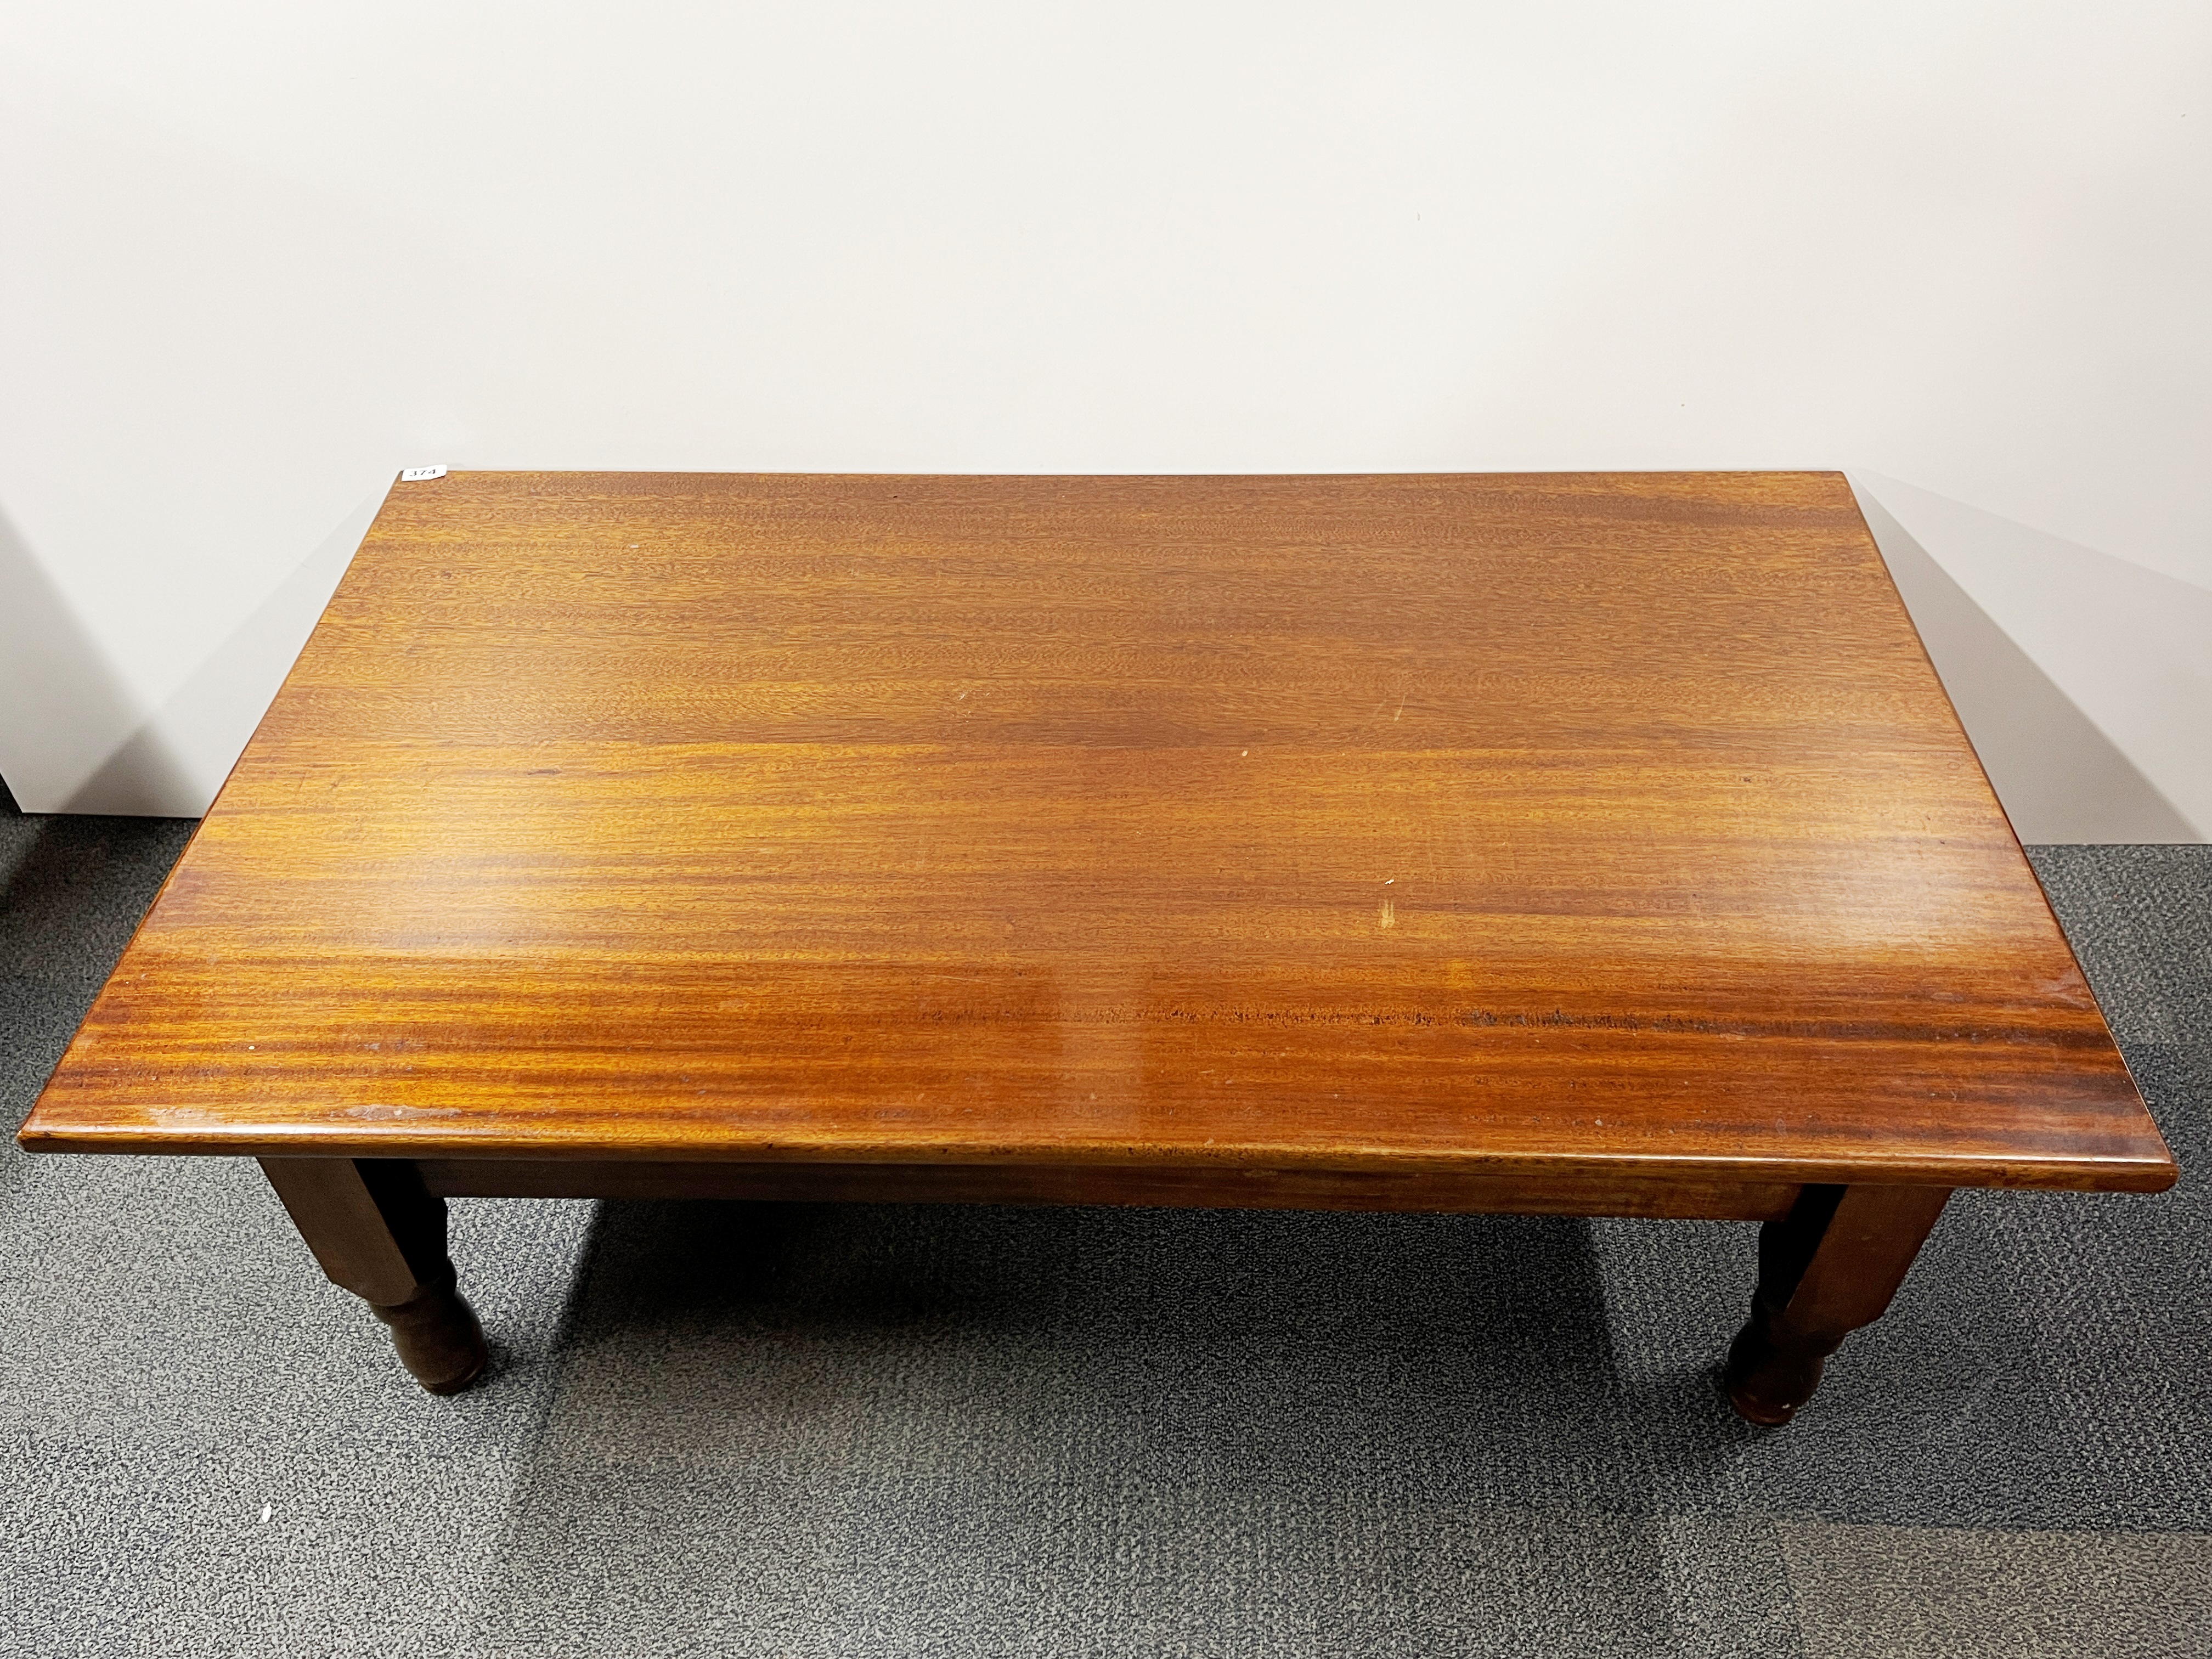 A handmade mahogany coffee table, 75 x 133 x 48cm.